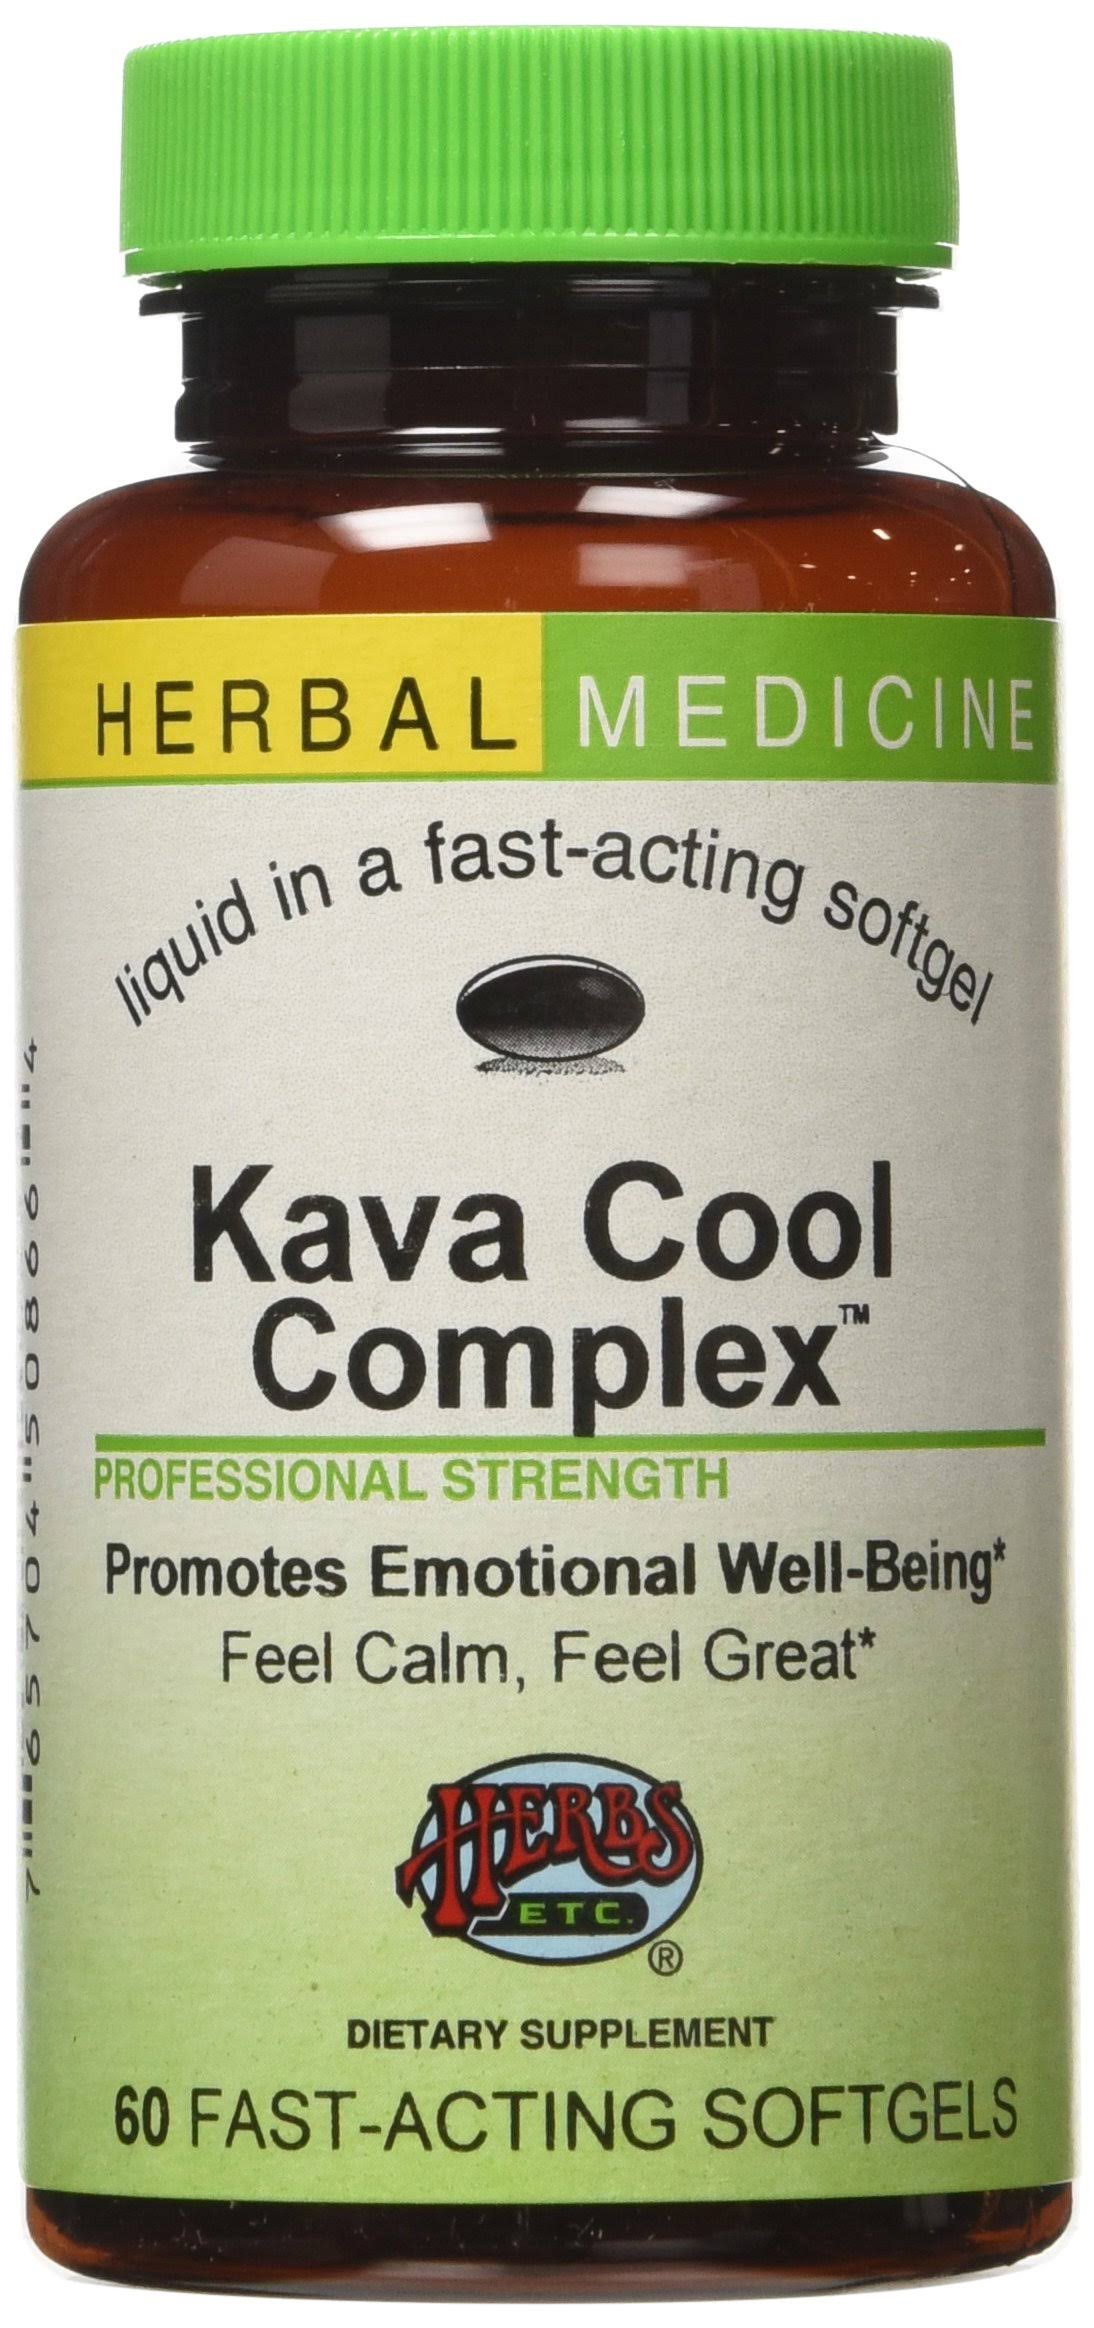 Herbs etc - Kava Cool Complex - 60 Softgels